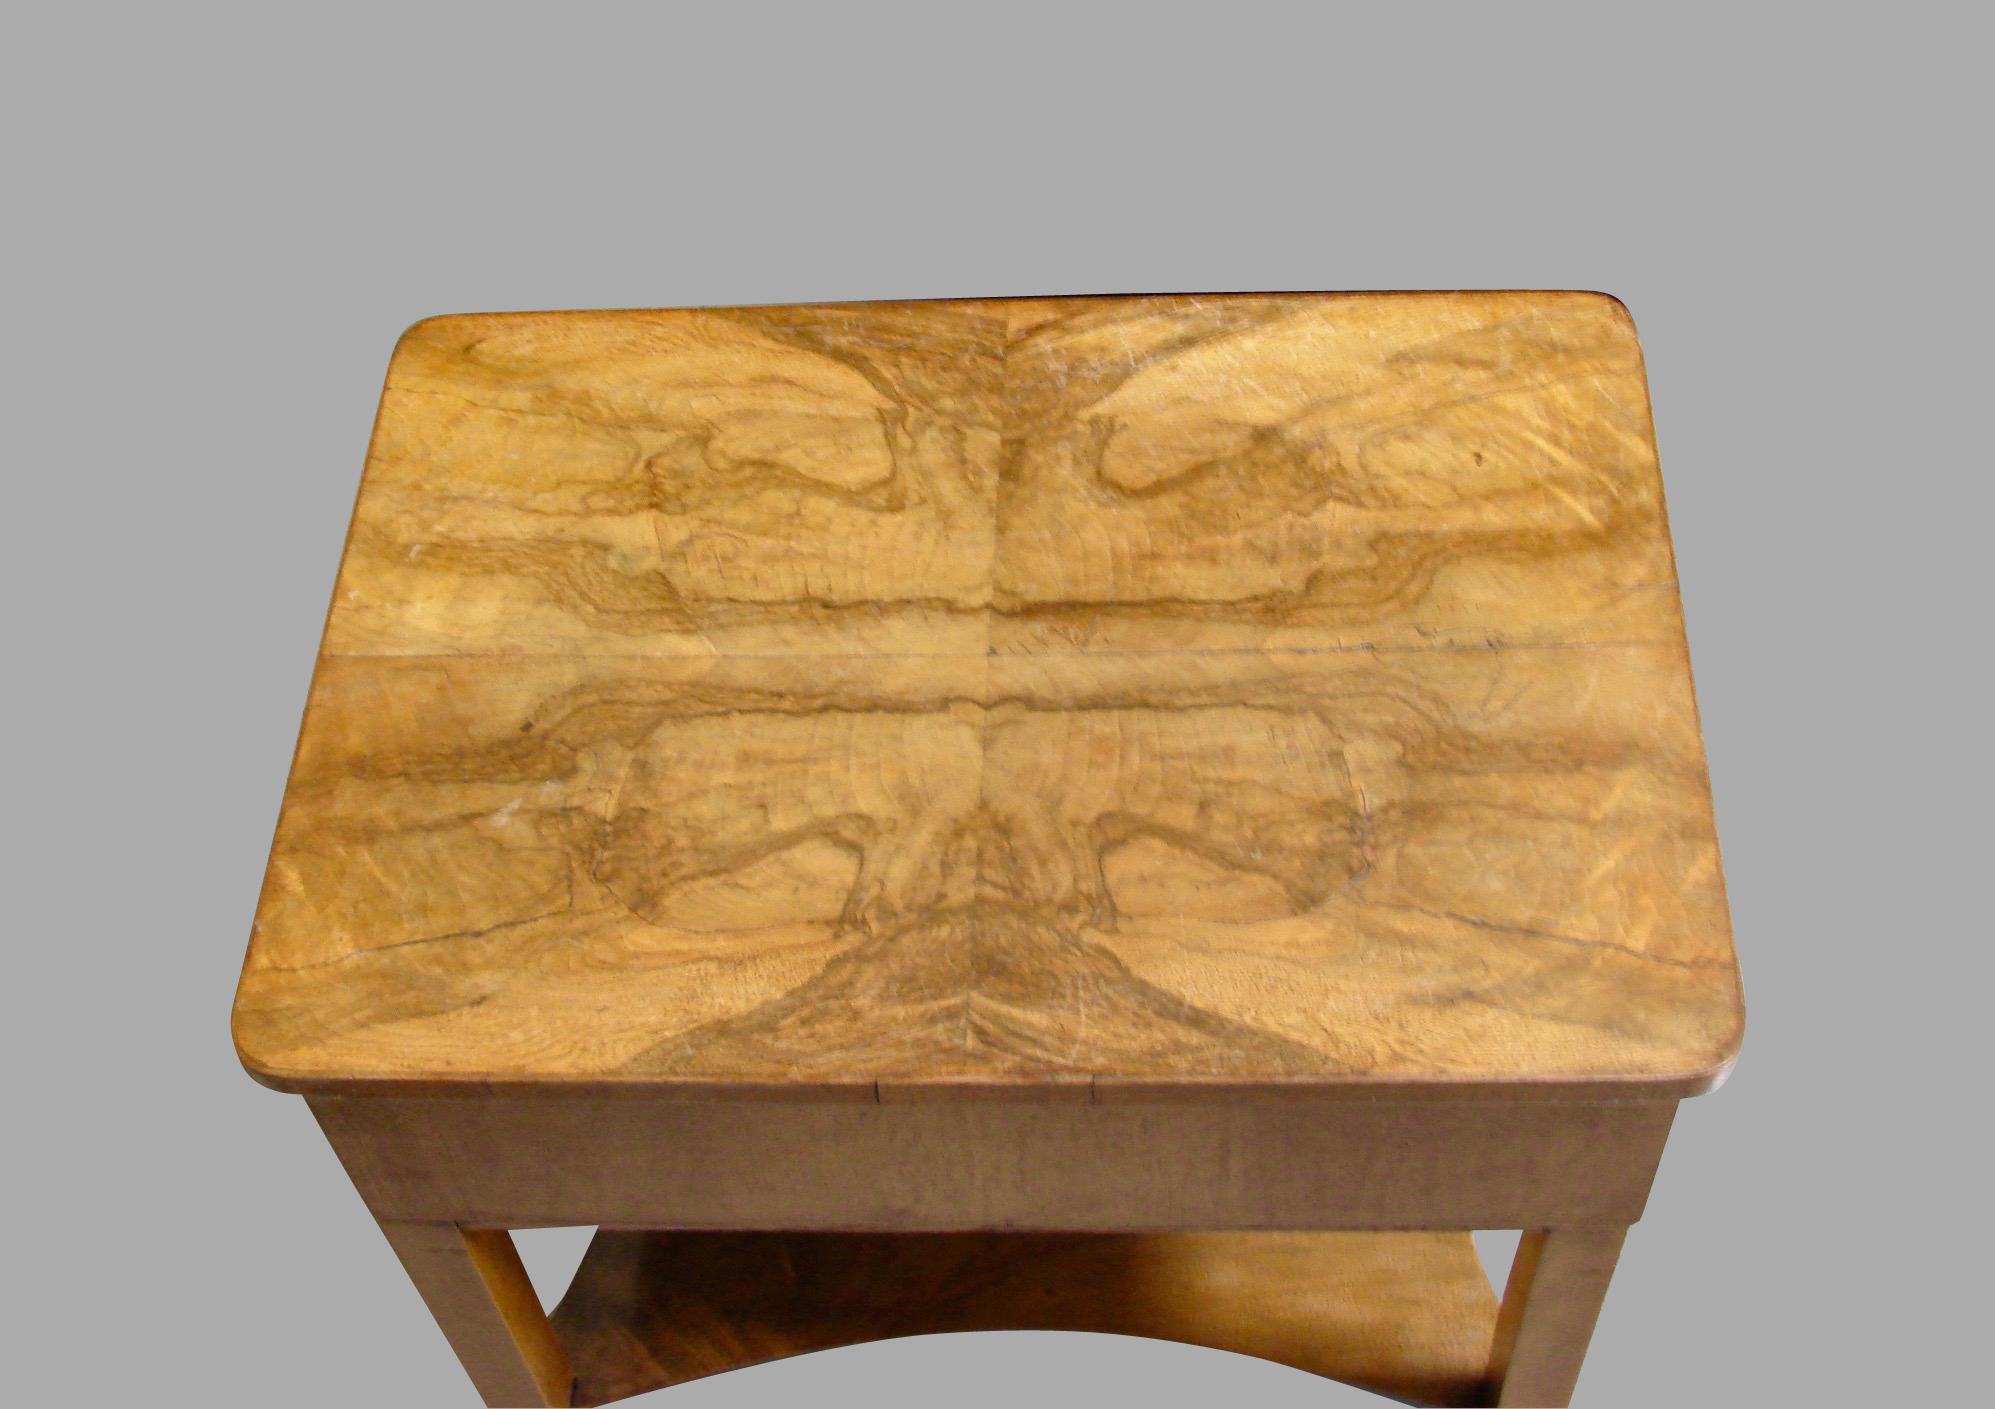 Biedermeier Burl Walnut Work Table with 2 Drawers and Lower Shelf 1